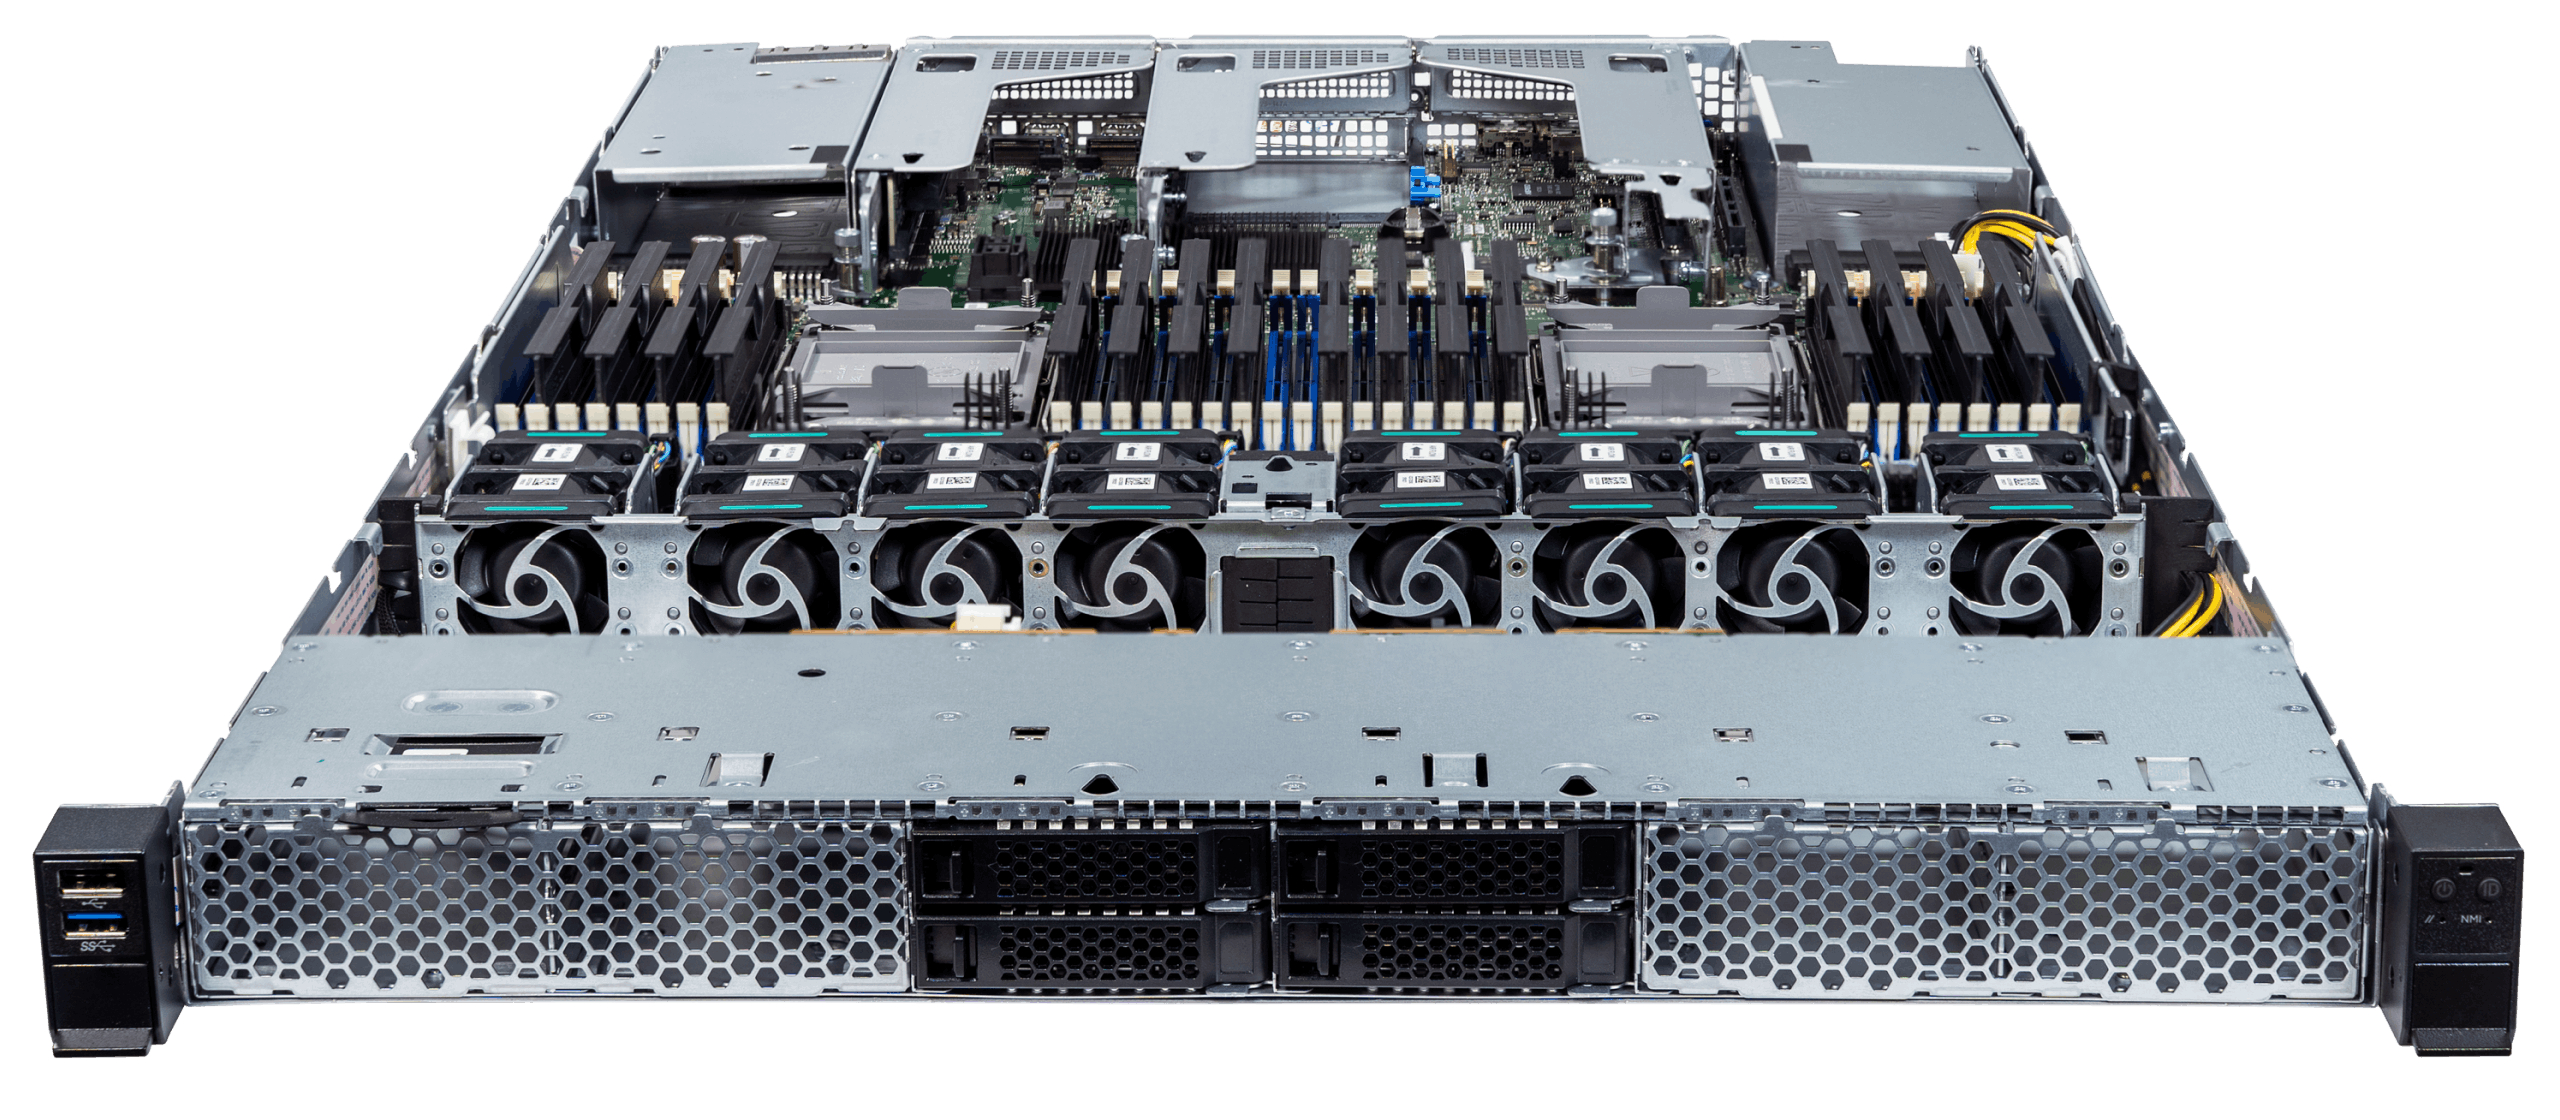 Front ports of the Jackal Pro 1U server